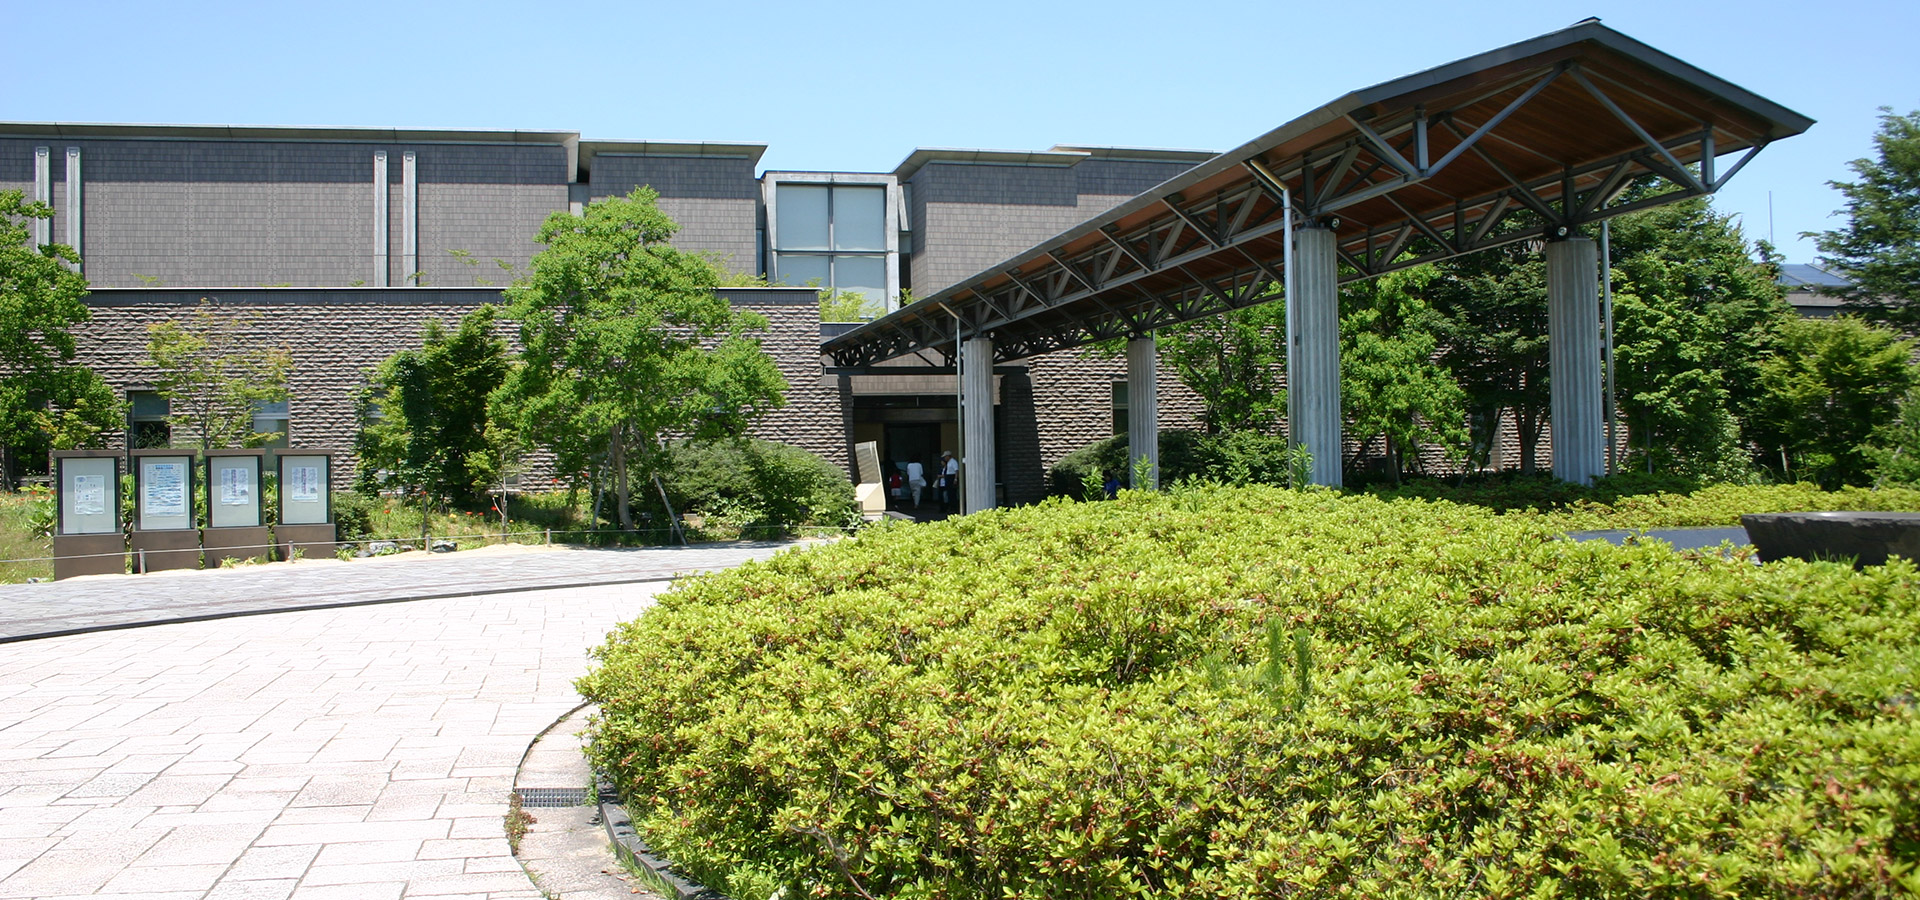 琵琶湖博物館